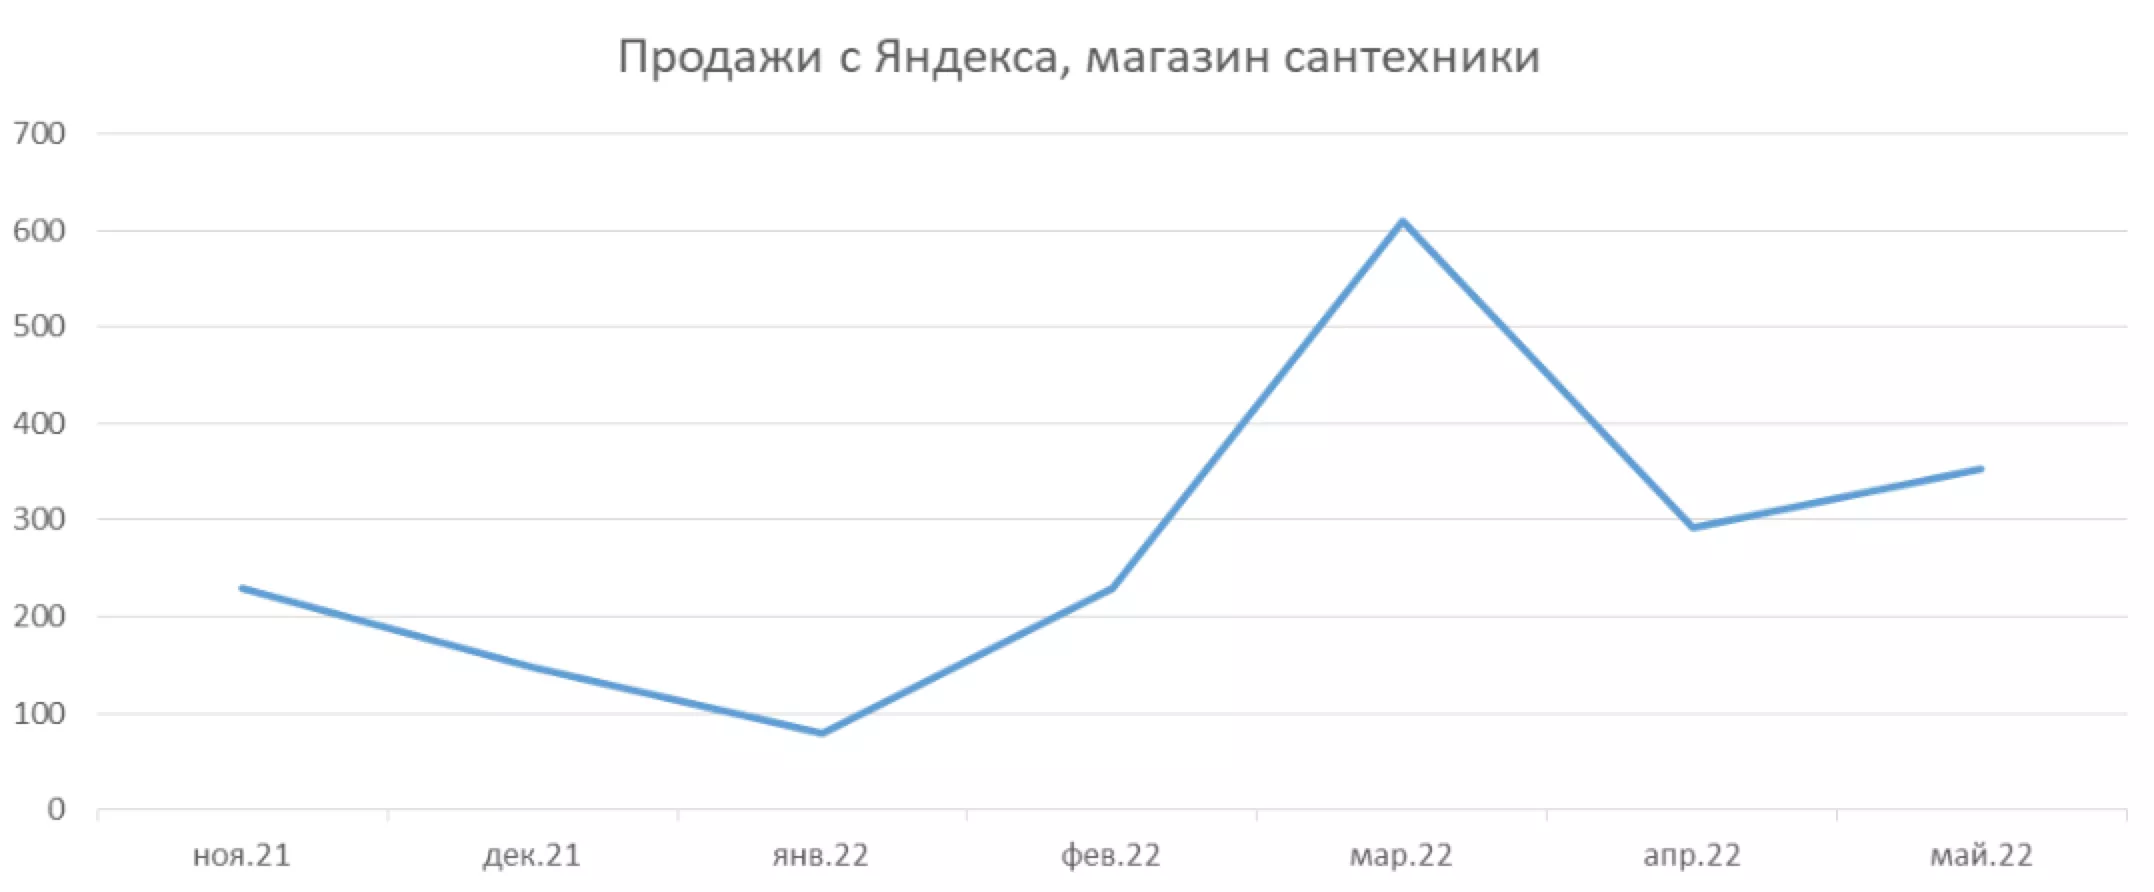 Продажи с Яндекса